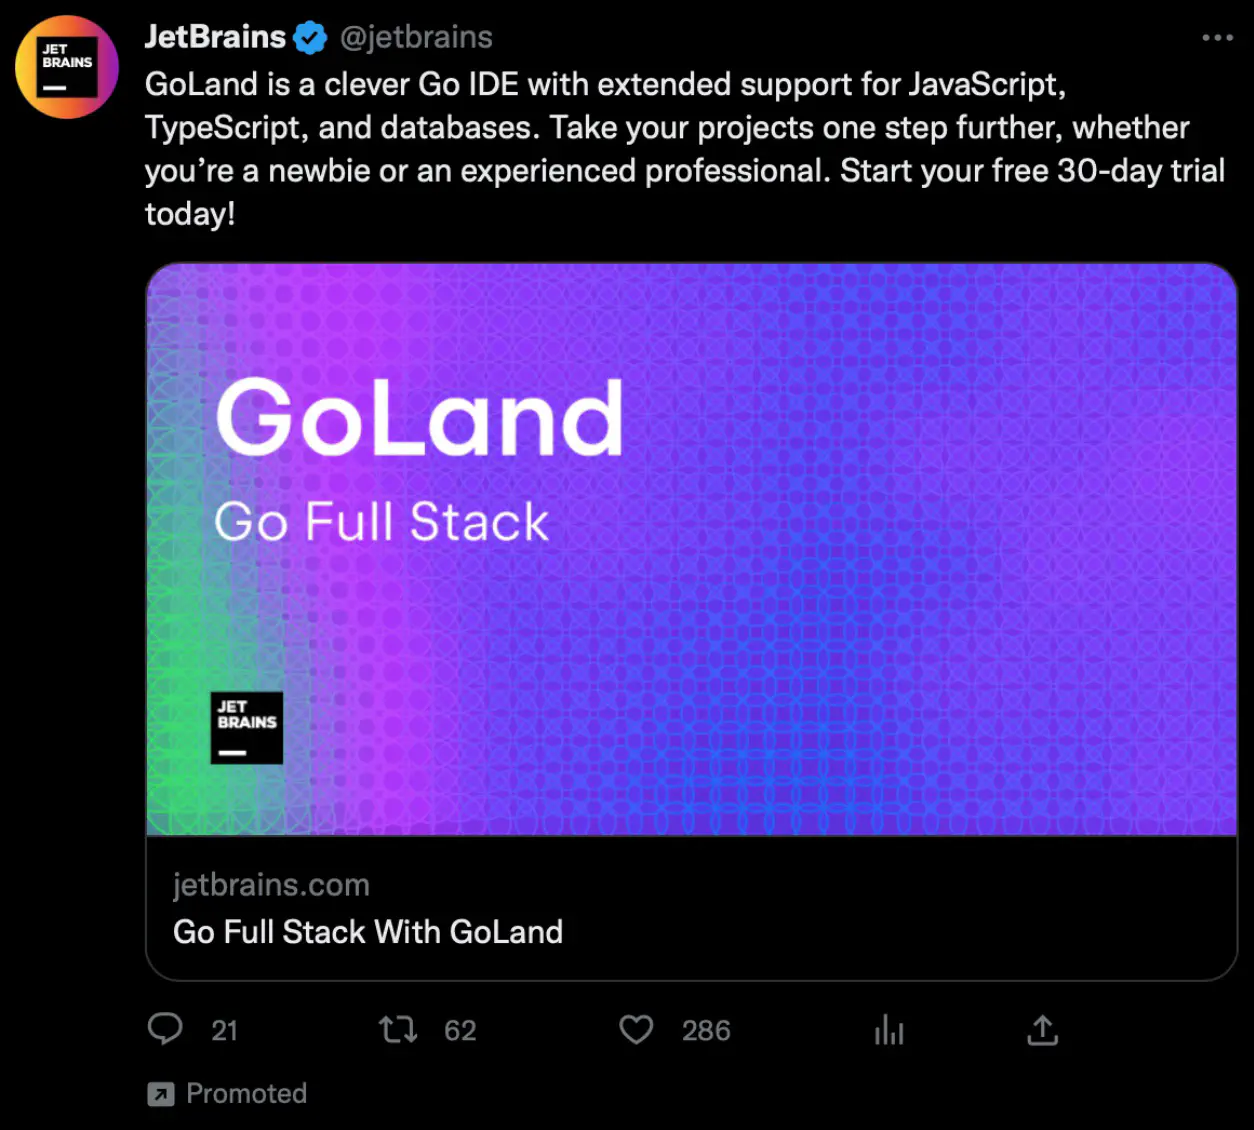 JetBrains ad on Twitter